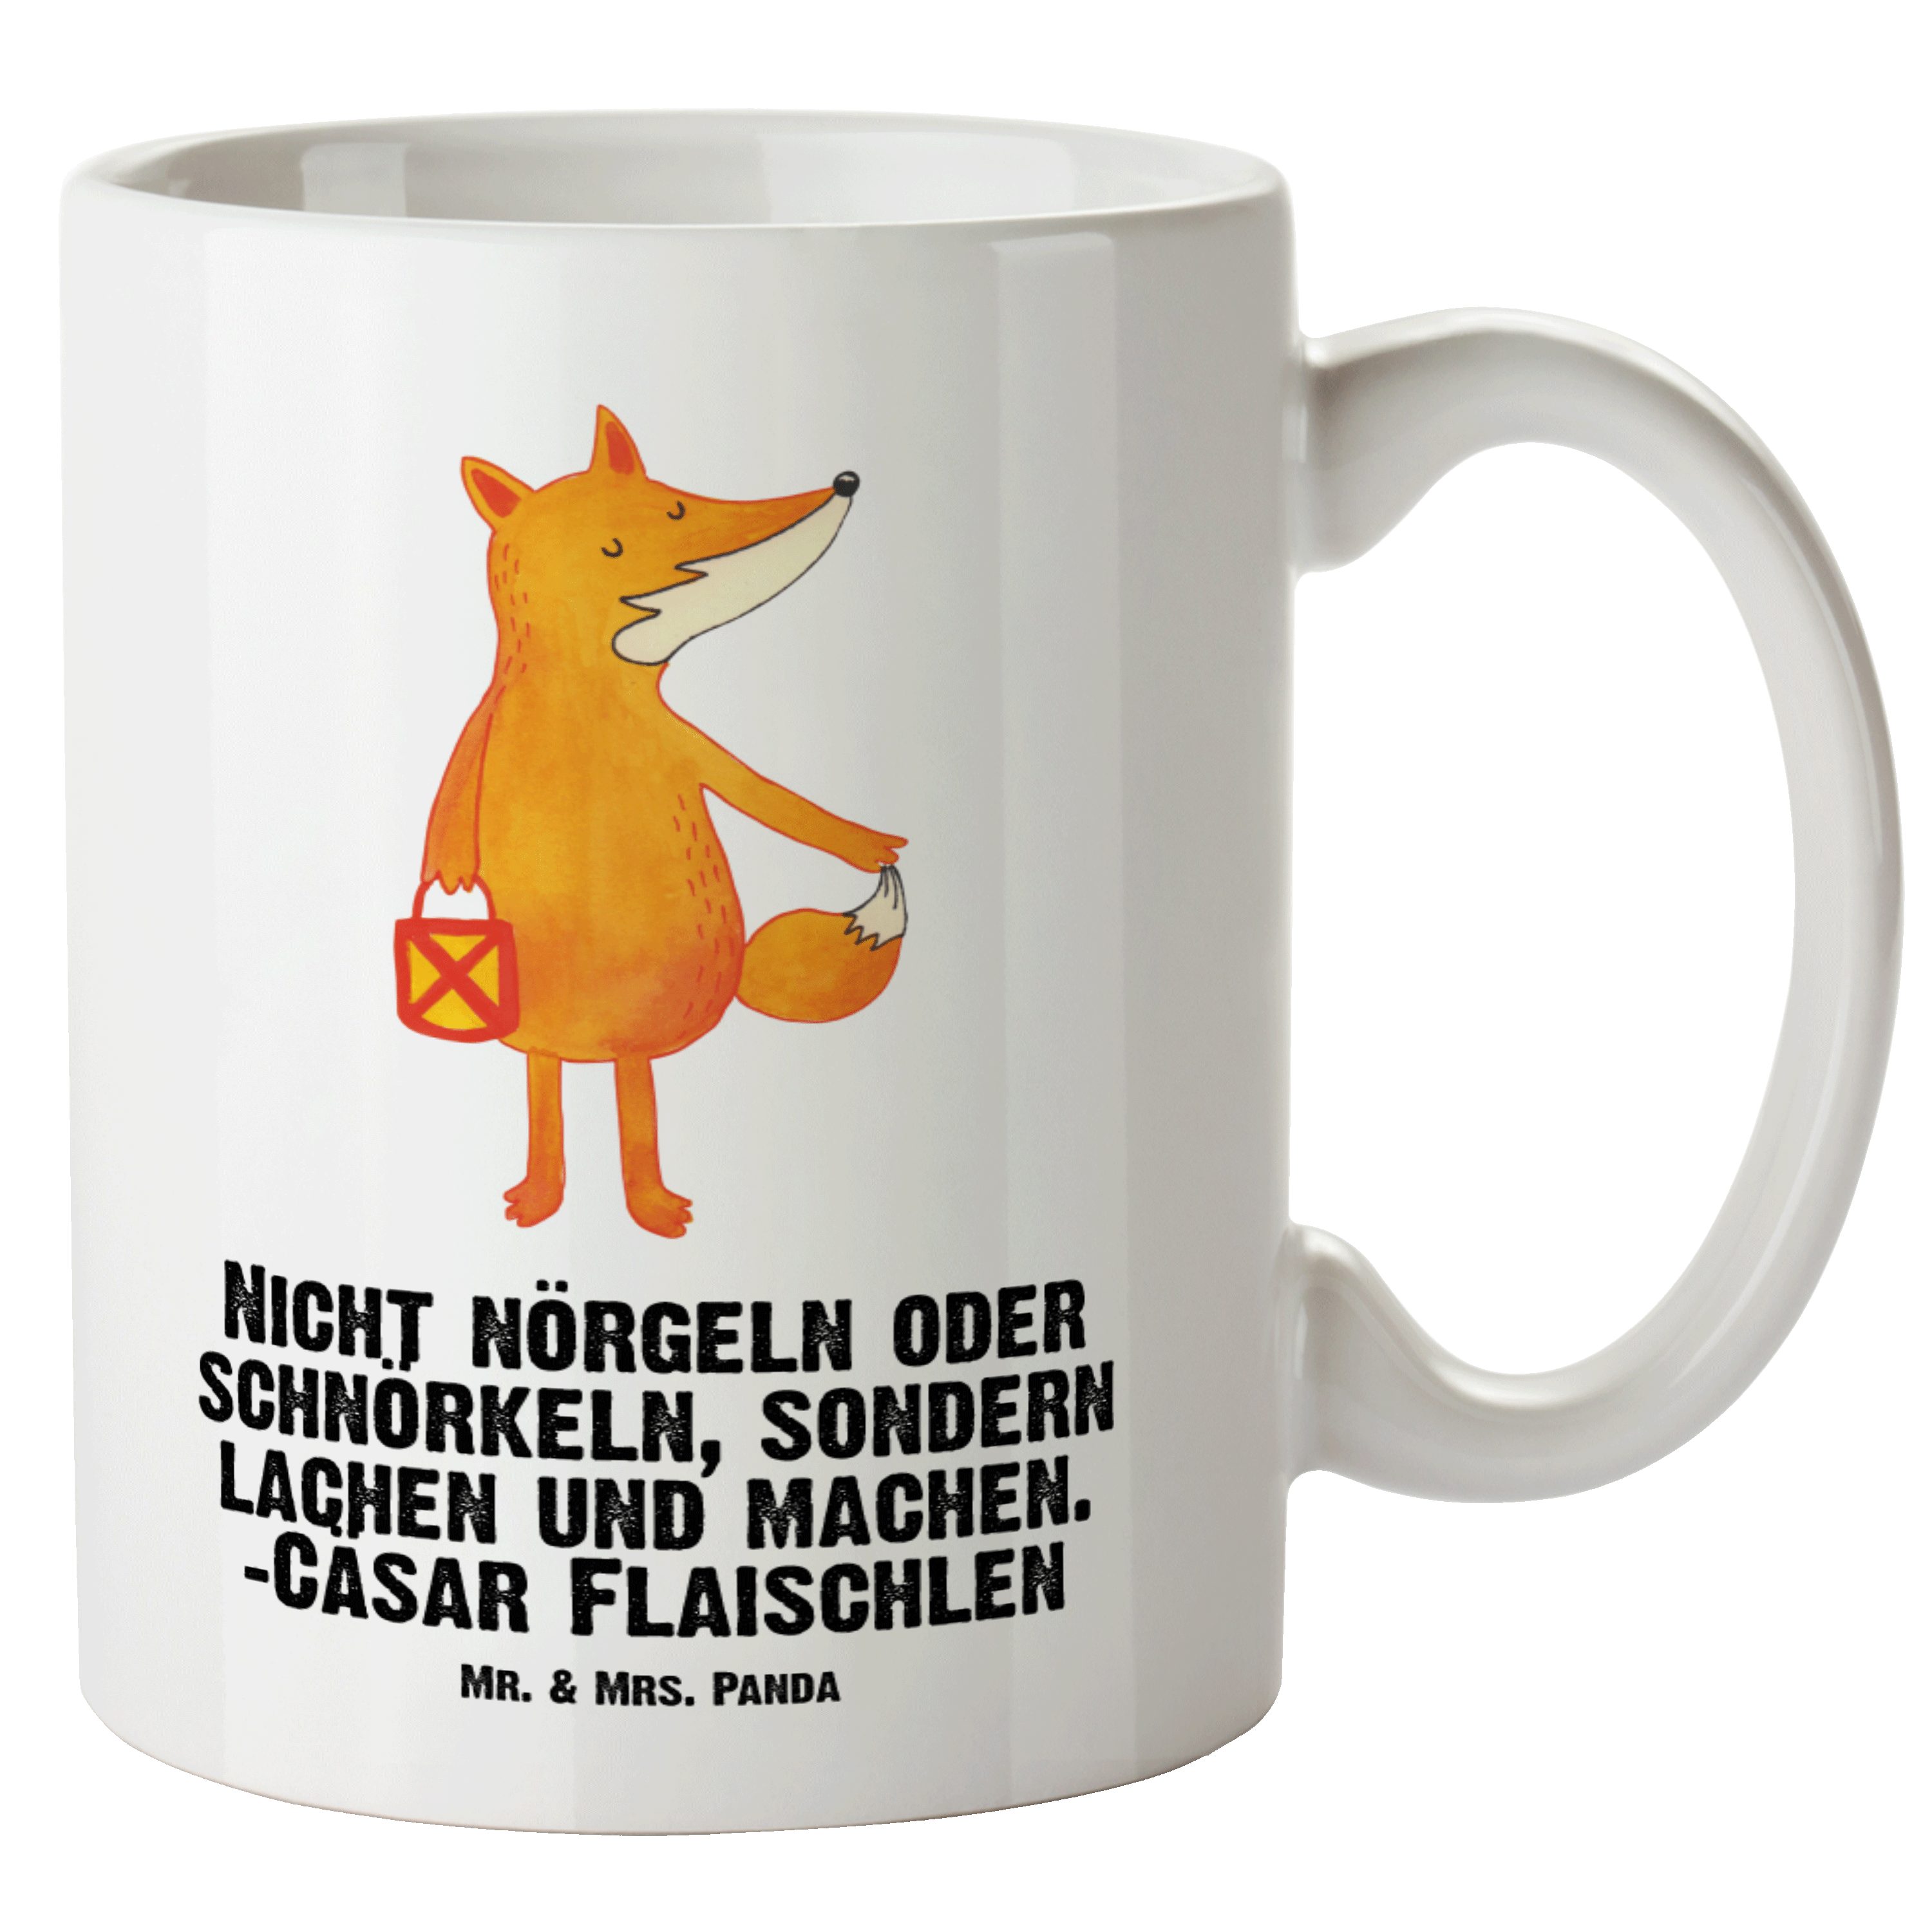 Mr. & Mrs. Panda Tasse Fuchs Laterne - Weiß - Geschenk, Grosse Kaffeetasse, Liebeskummer Spr, XL Tasse Keramik